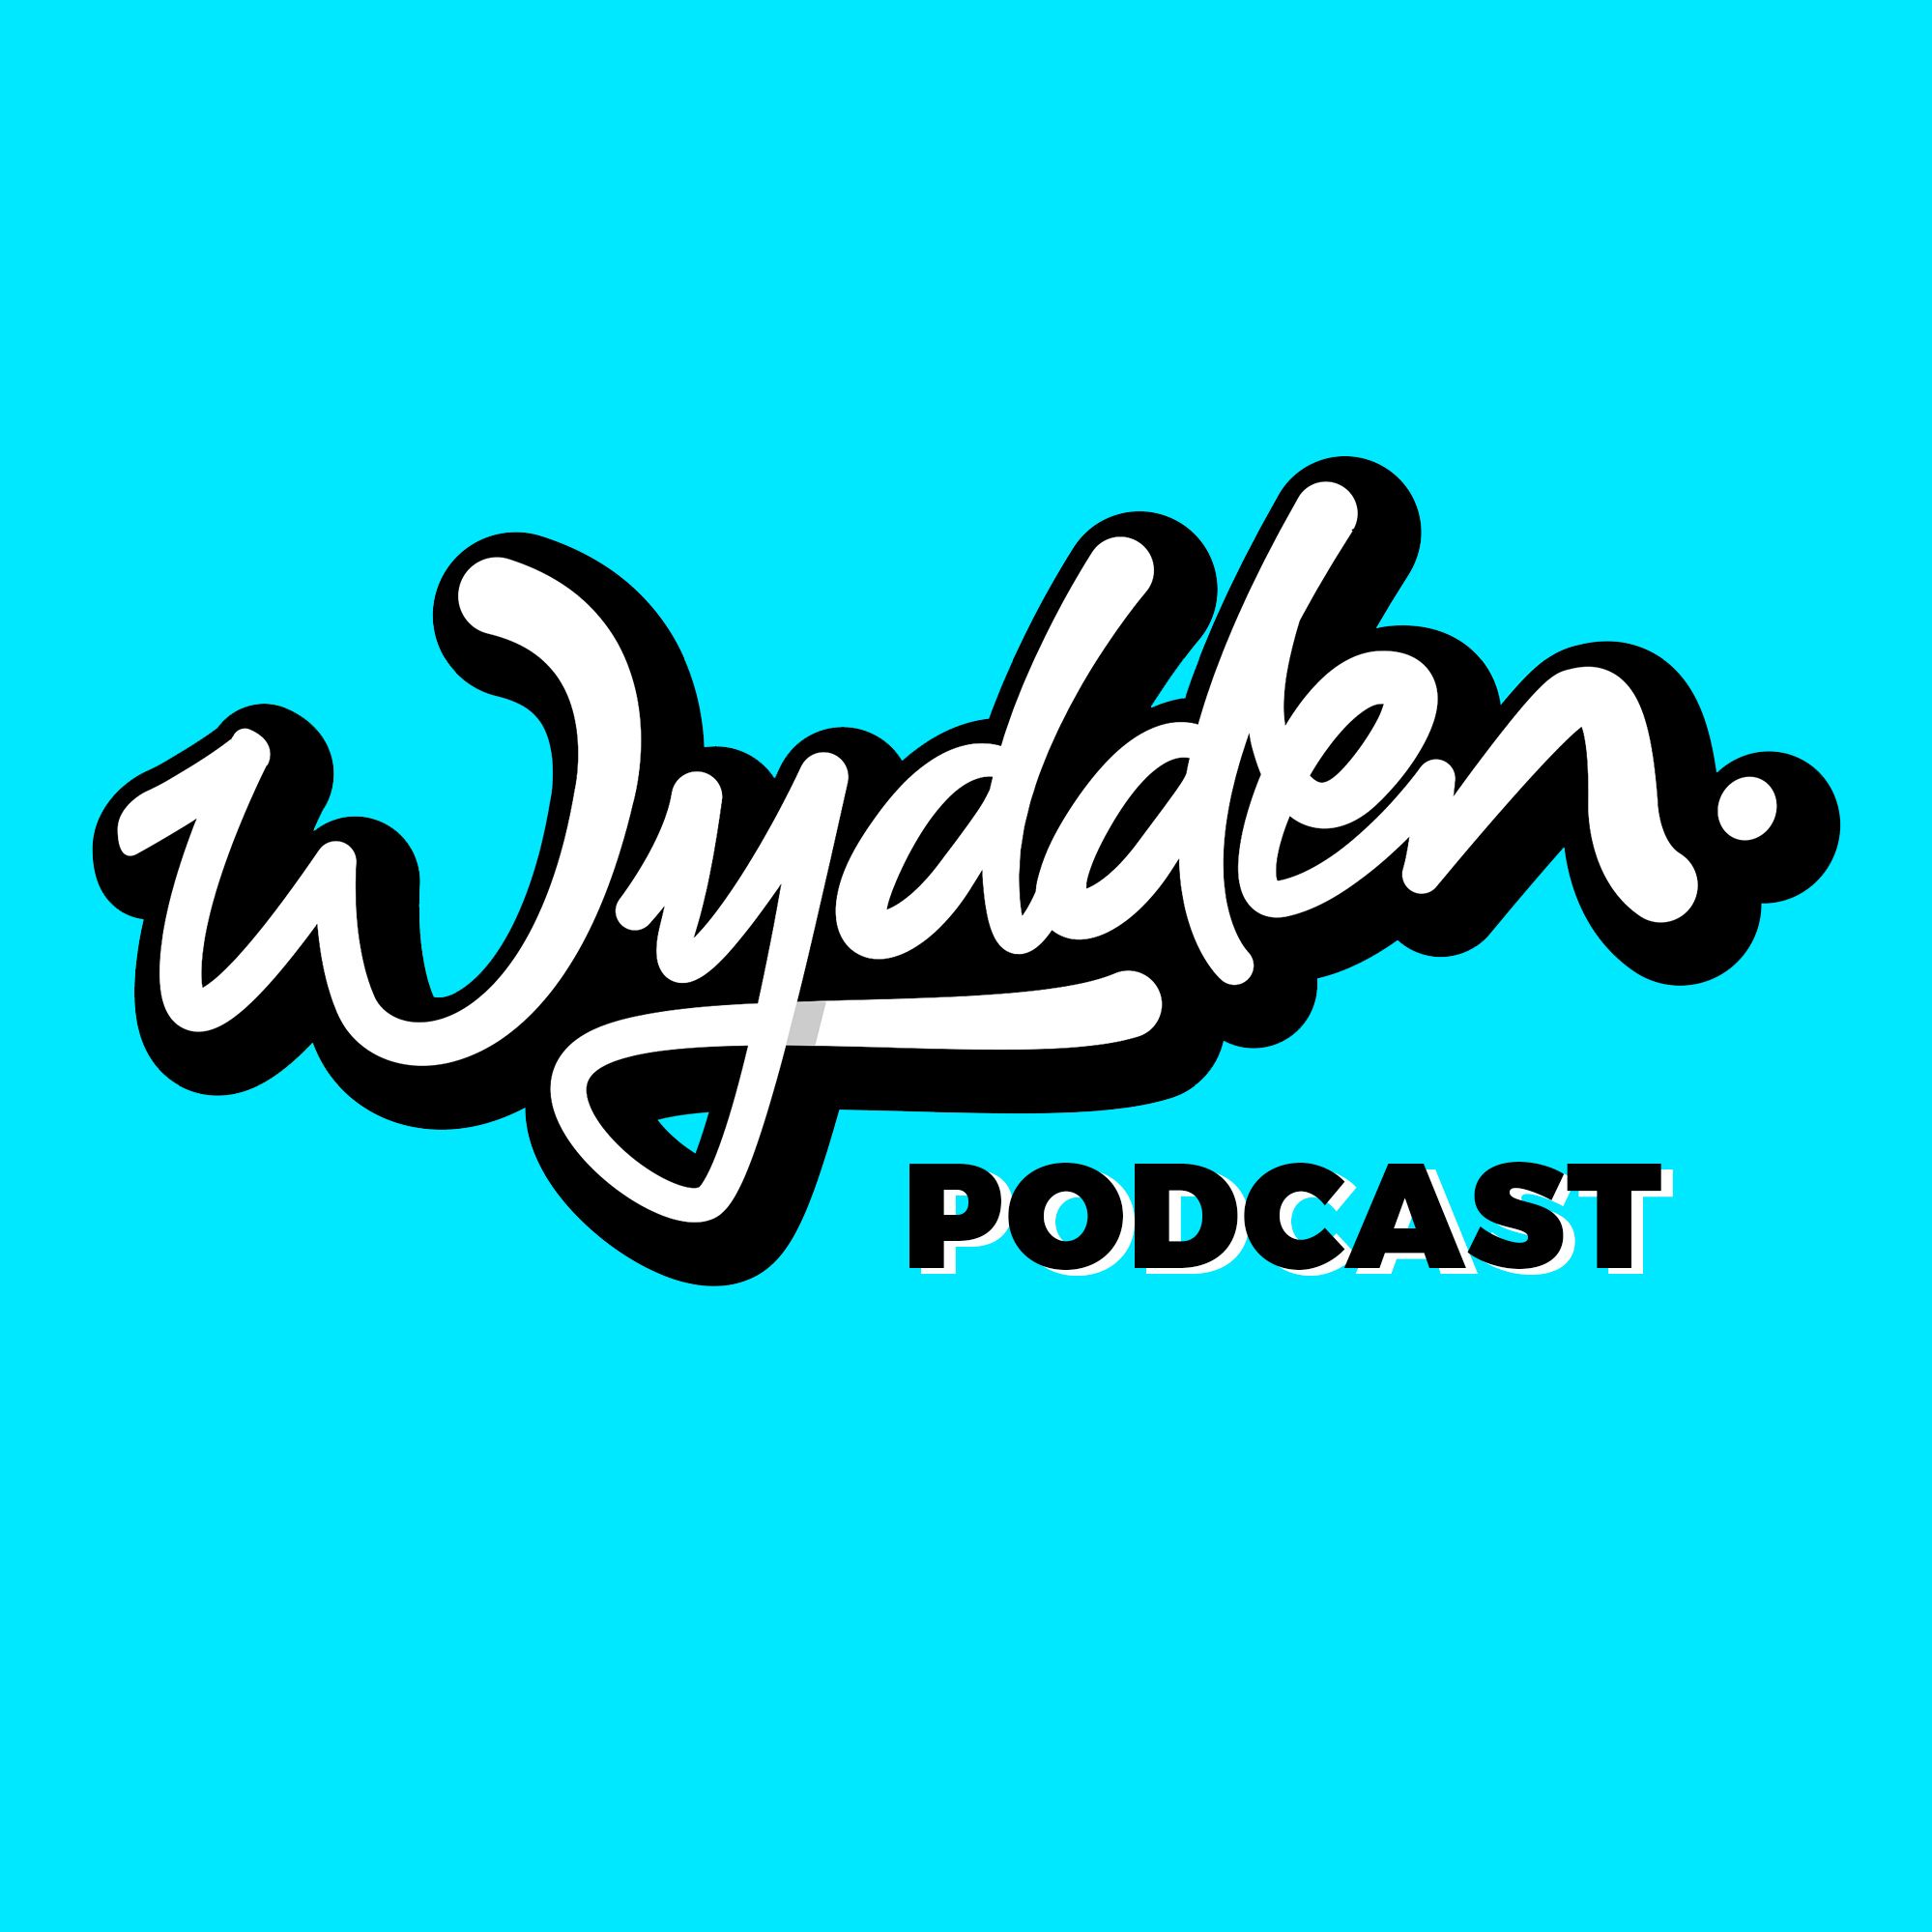 Wydden by 1001startups